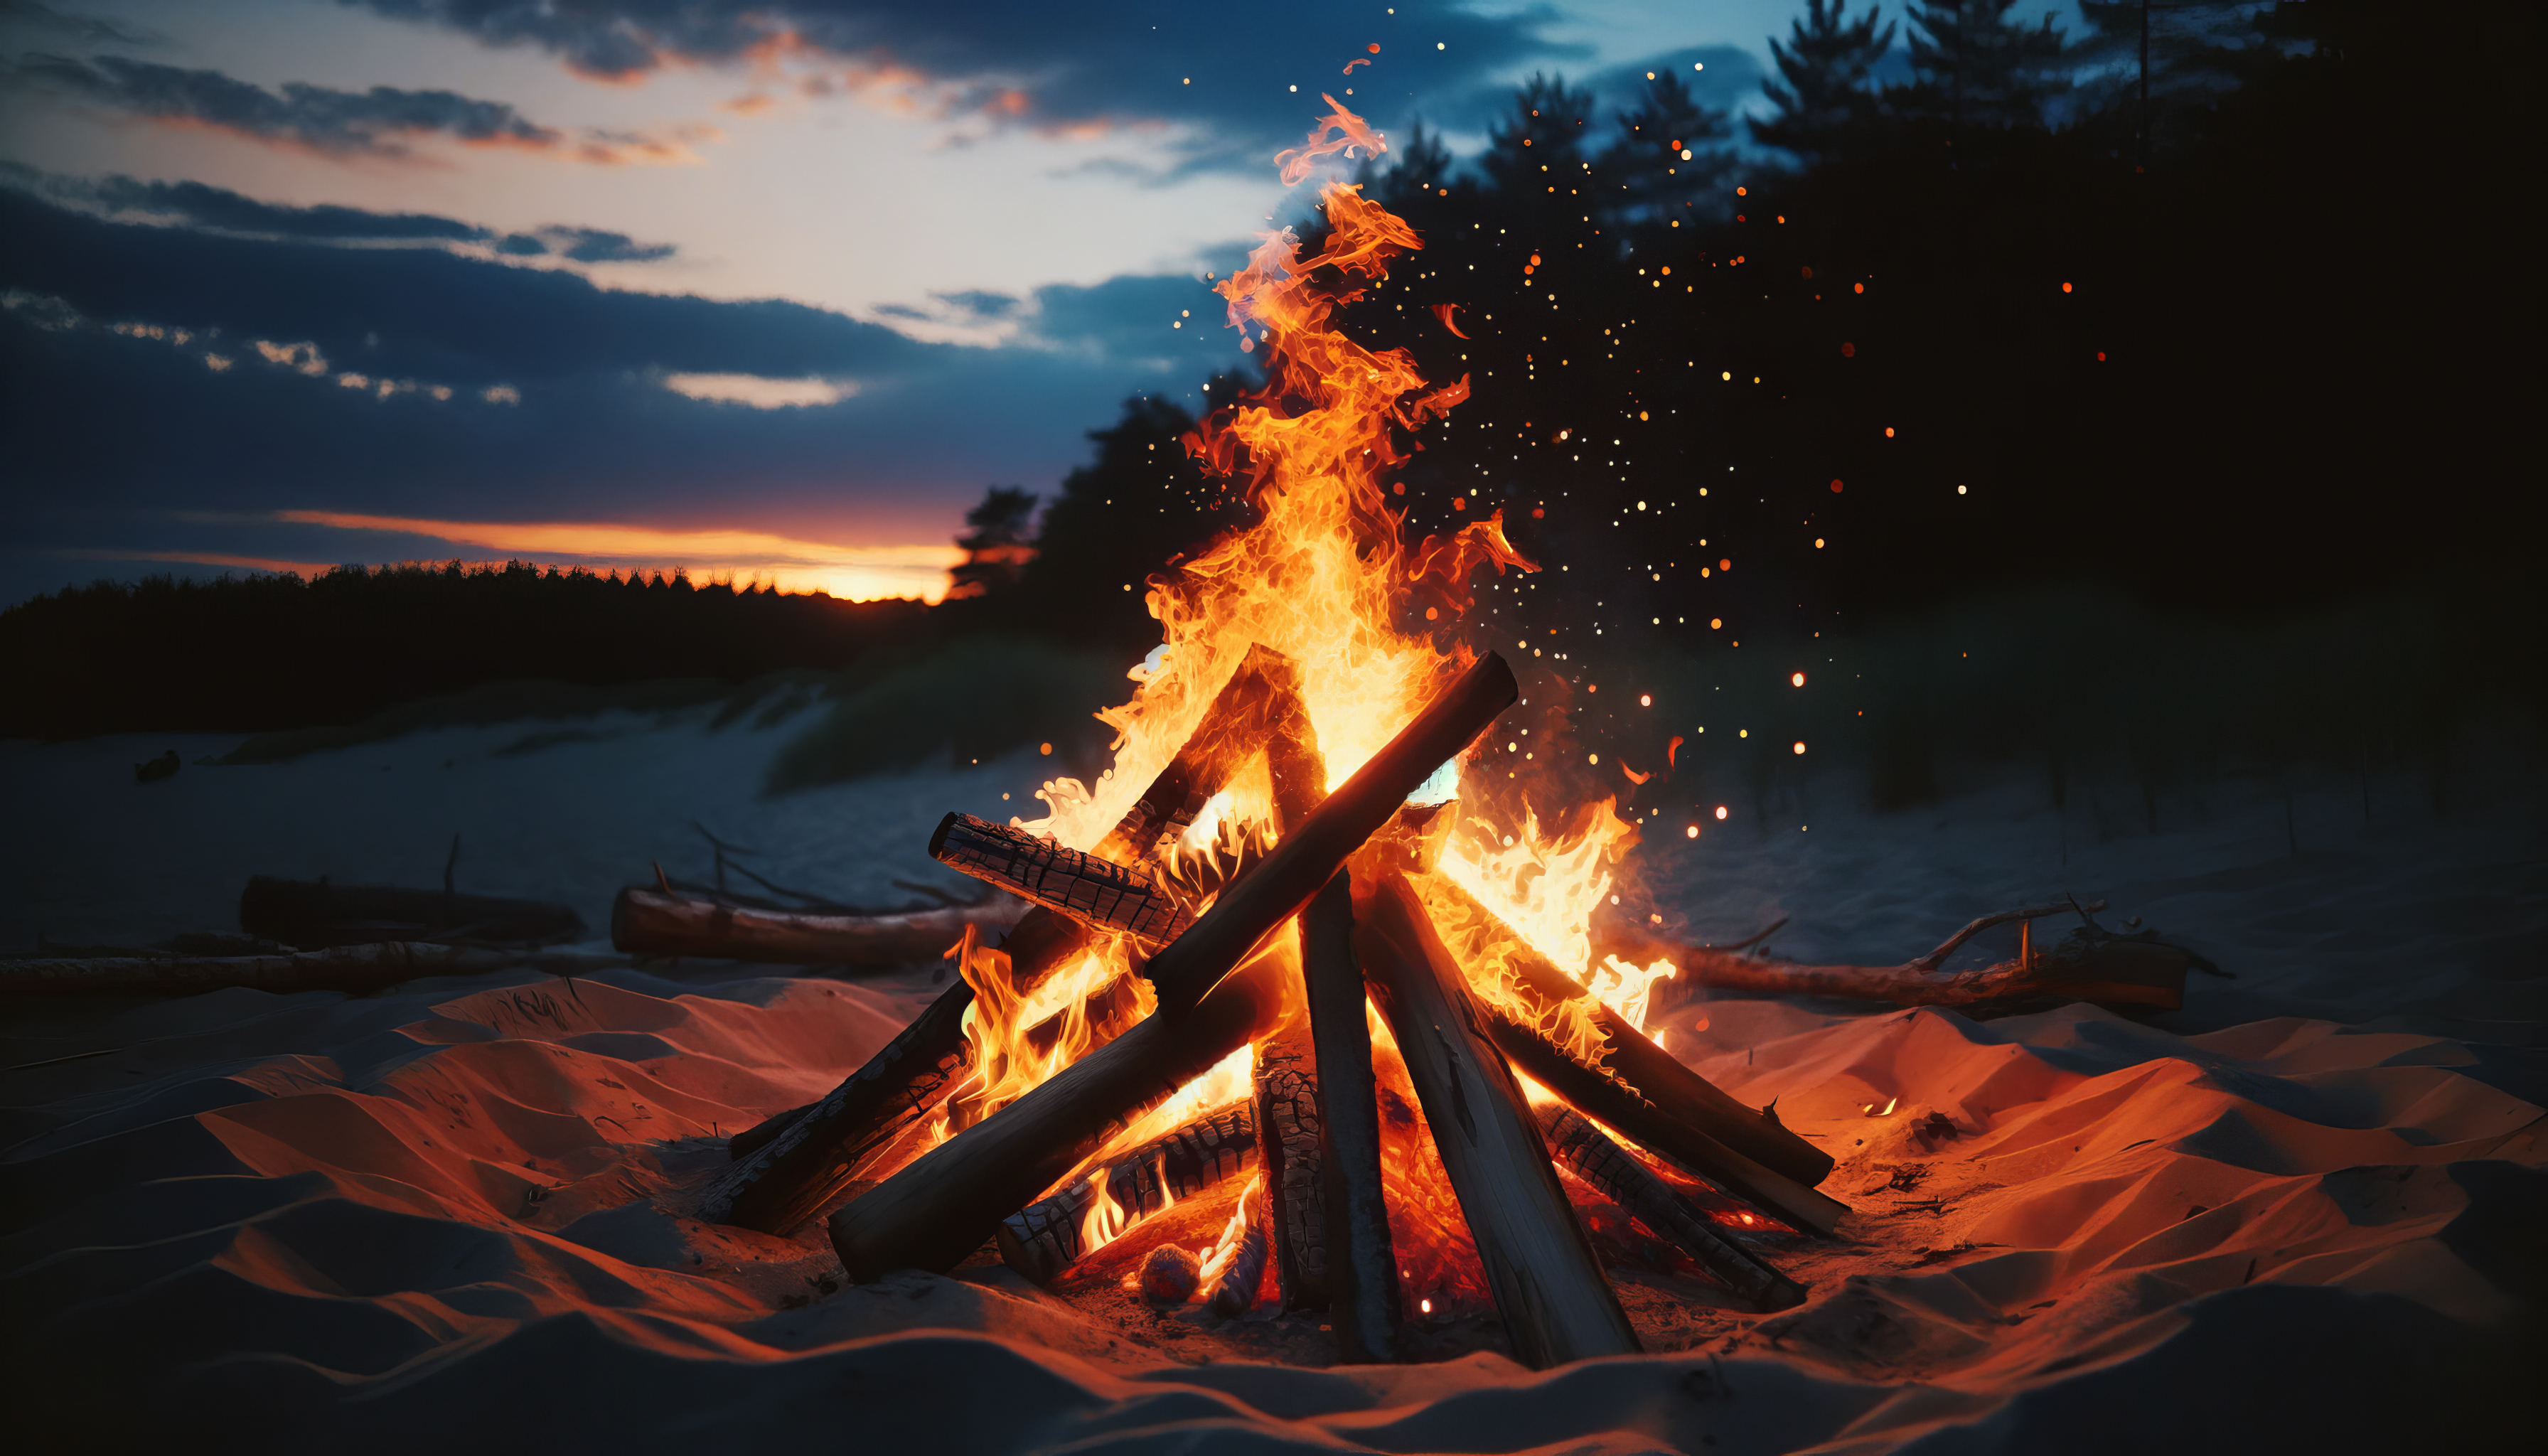 Bonfire at the Beach